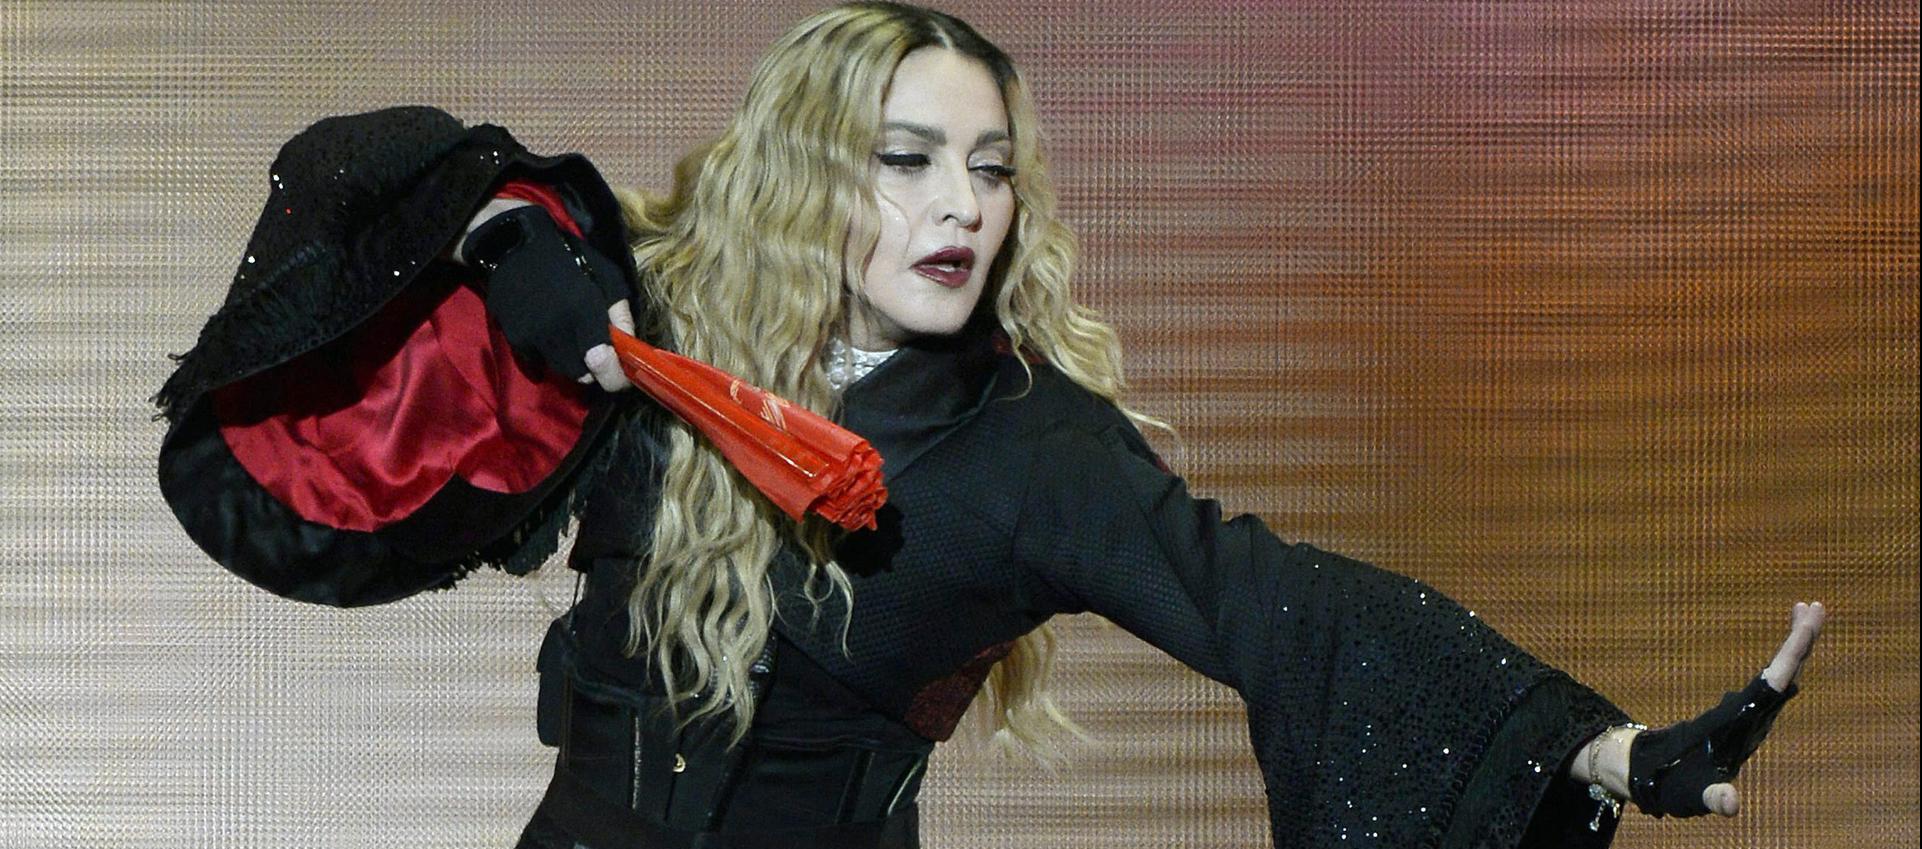 Madonna en una imagen de archivo.